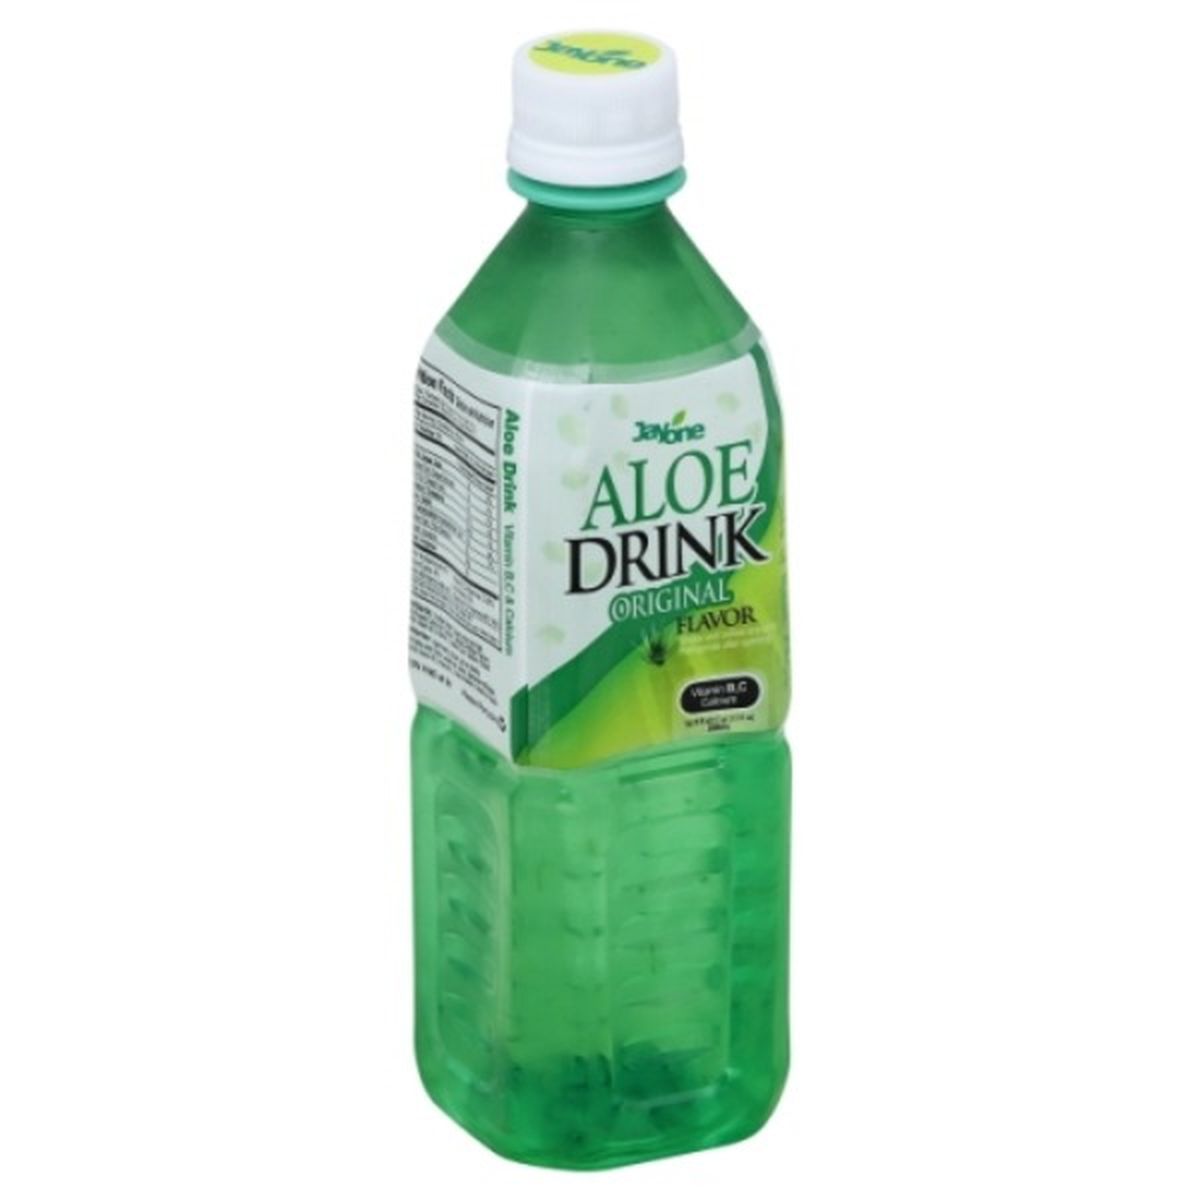 Calories in Jayone Aloe Drink, Original Flavor